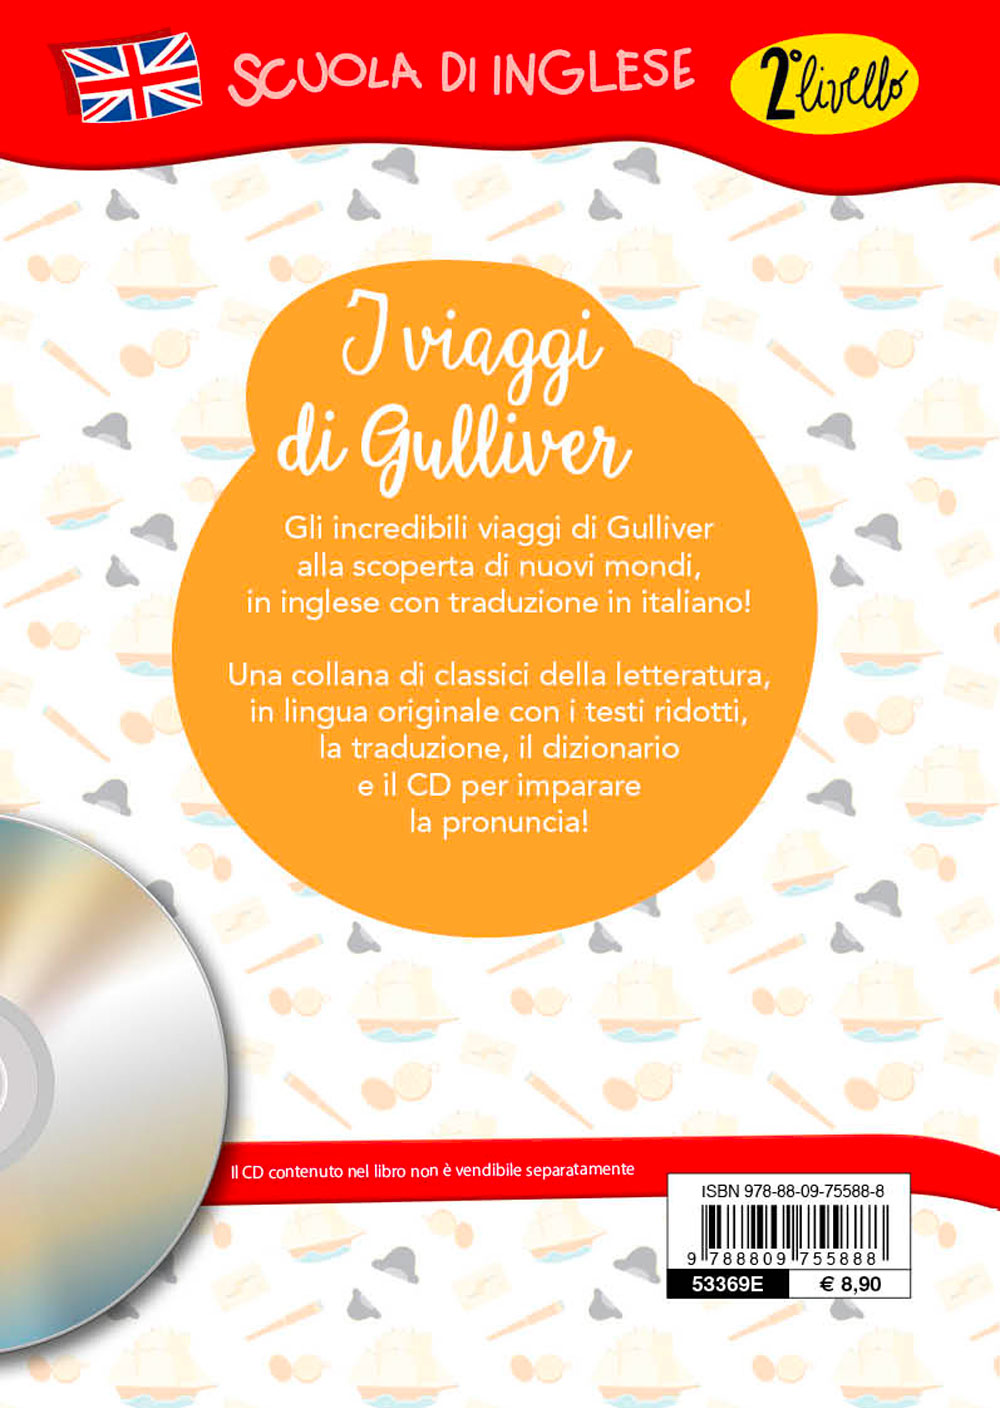 Gulliver's travels + CD::Con traduzione e dizionario